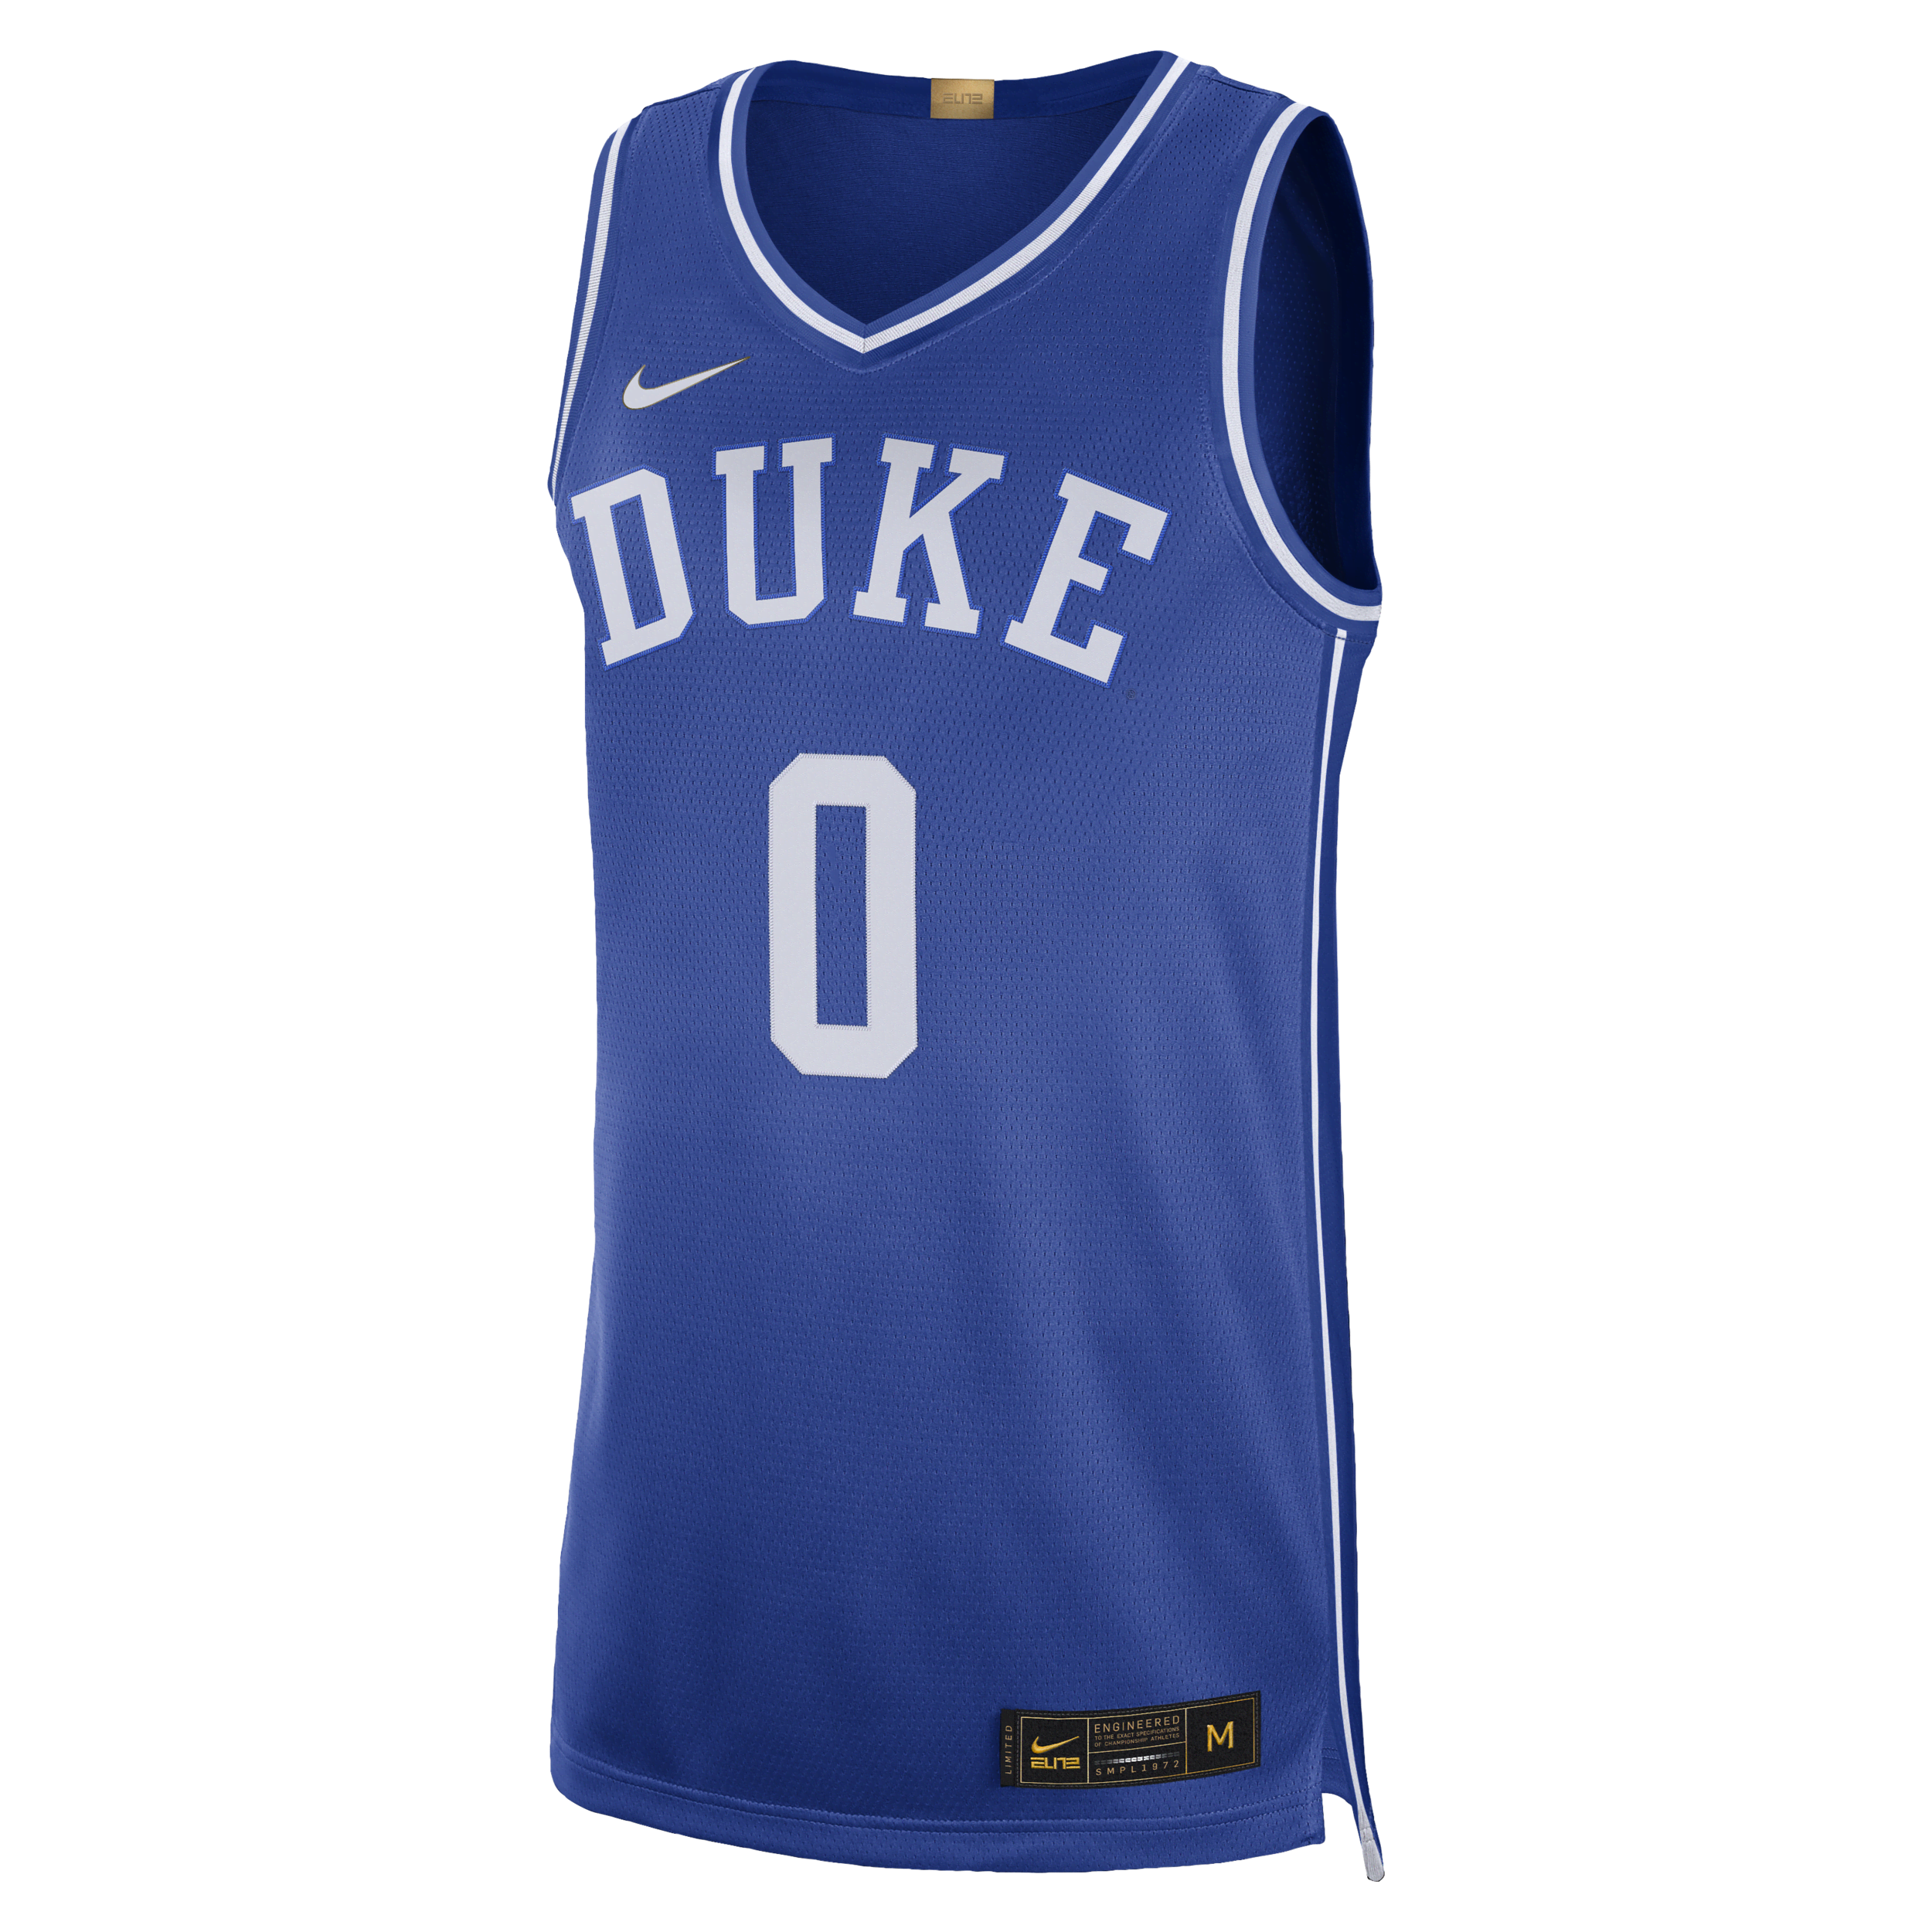 Duke Limited Nike universiteitsbasketbaljersey met Dri-FIT voor heren - Blauw